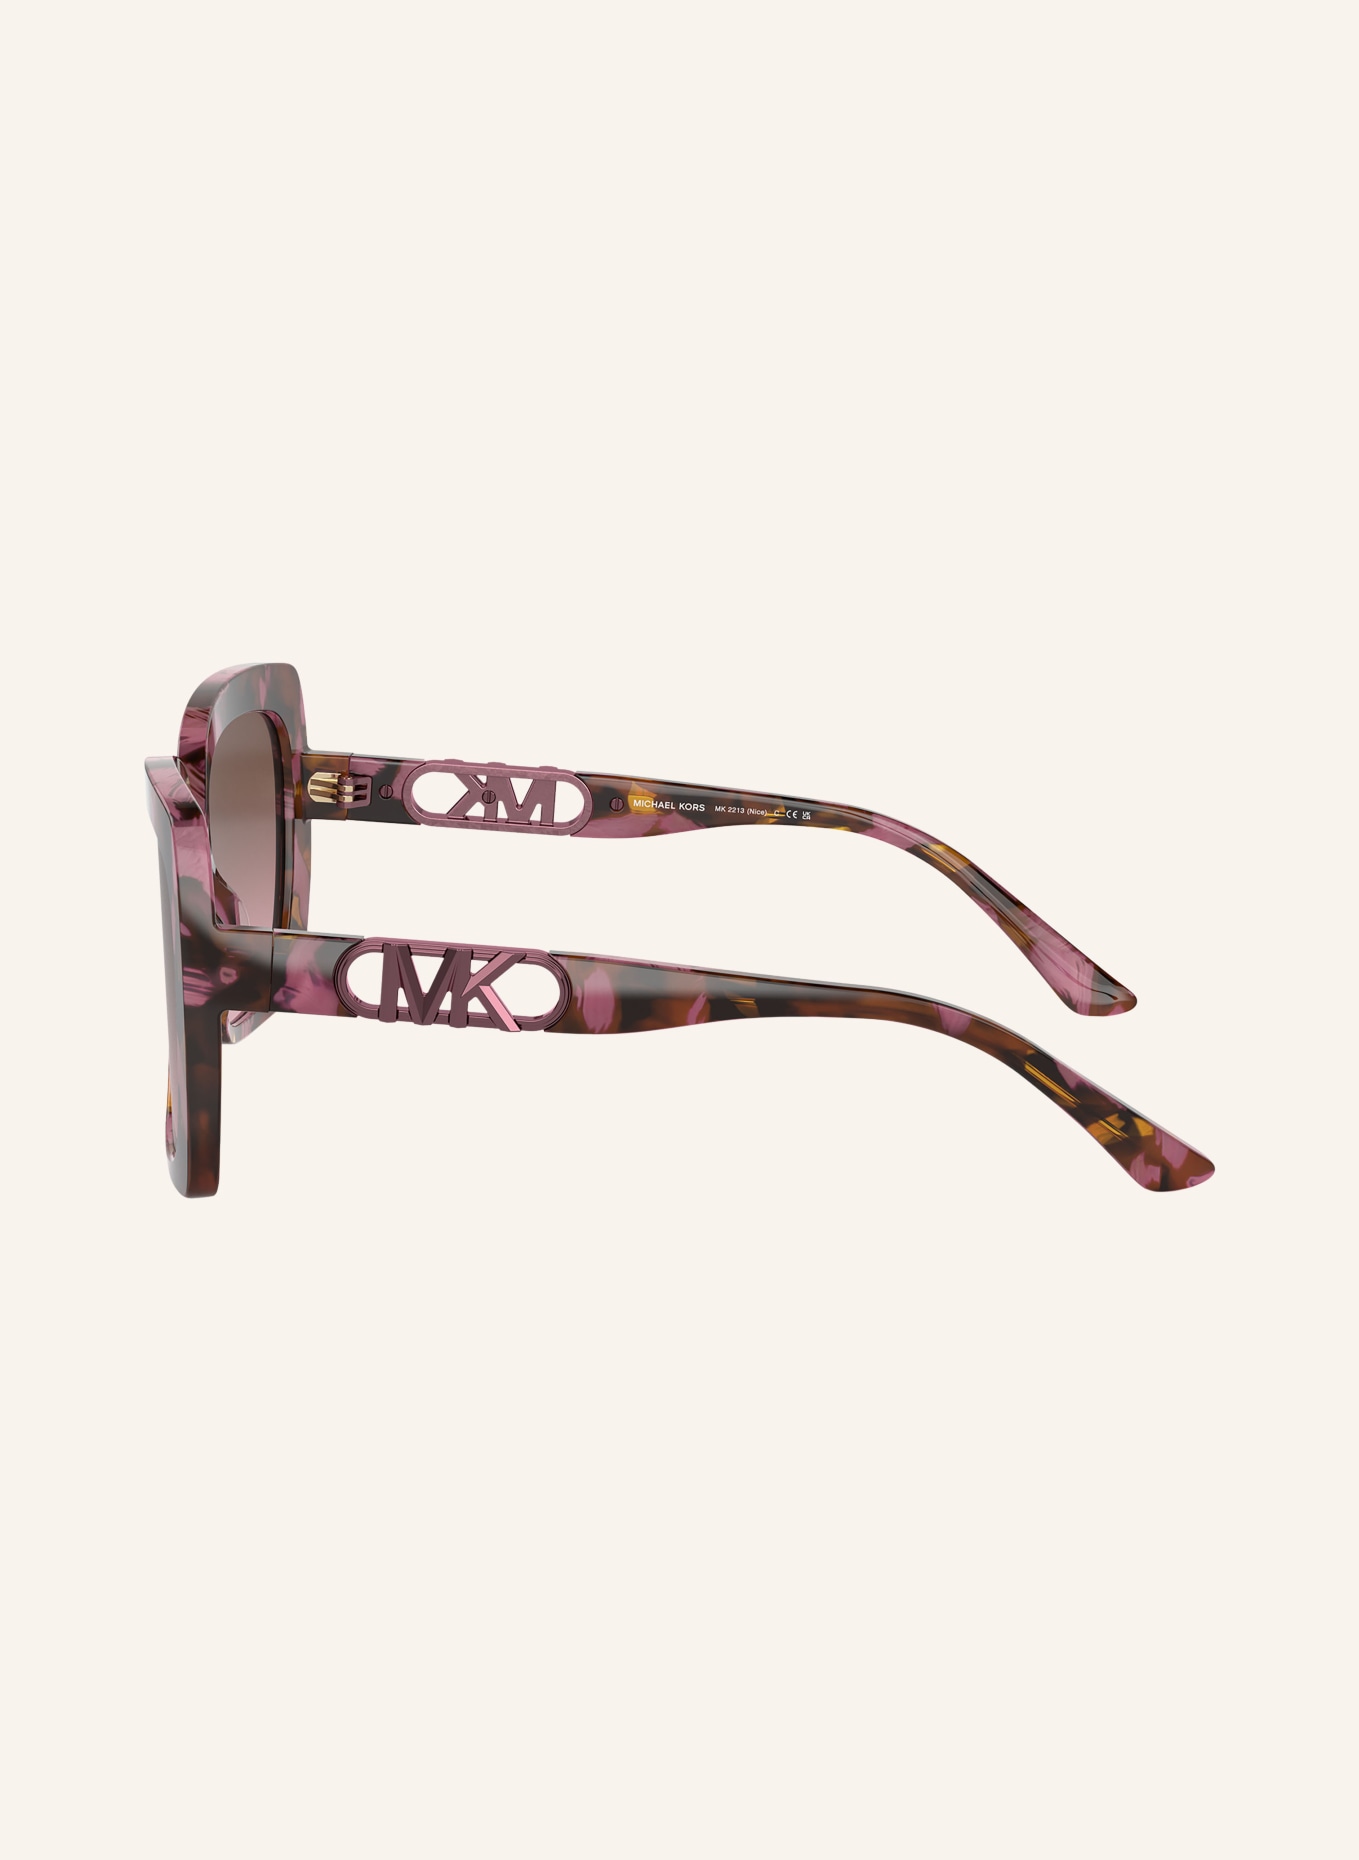 MICHAEL KORS Sonnenbrille MK2213 NICE, Farbe: 39989T - HAVANA/ BRAUN VERLAUF (Bild 3)